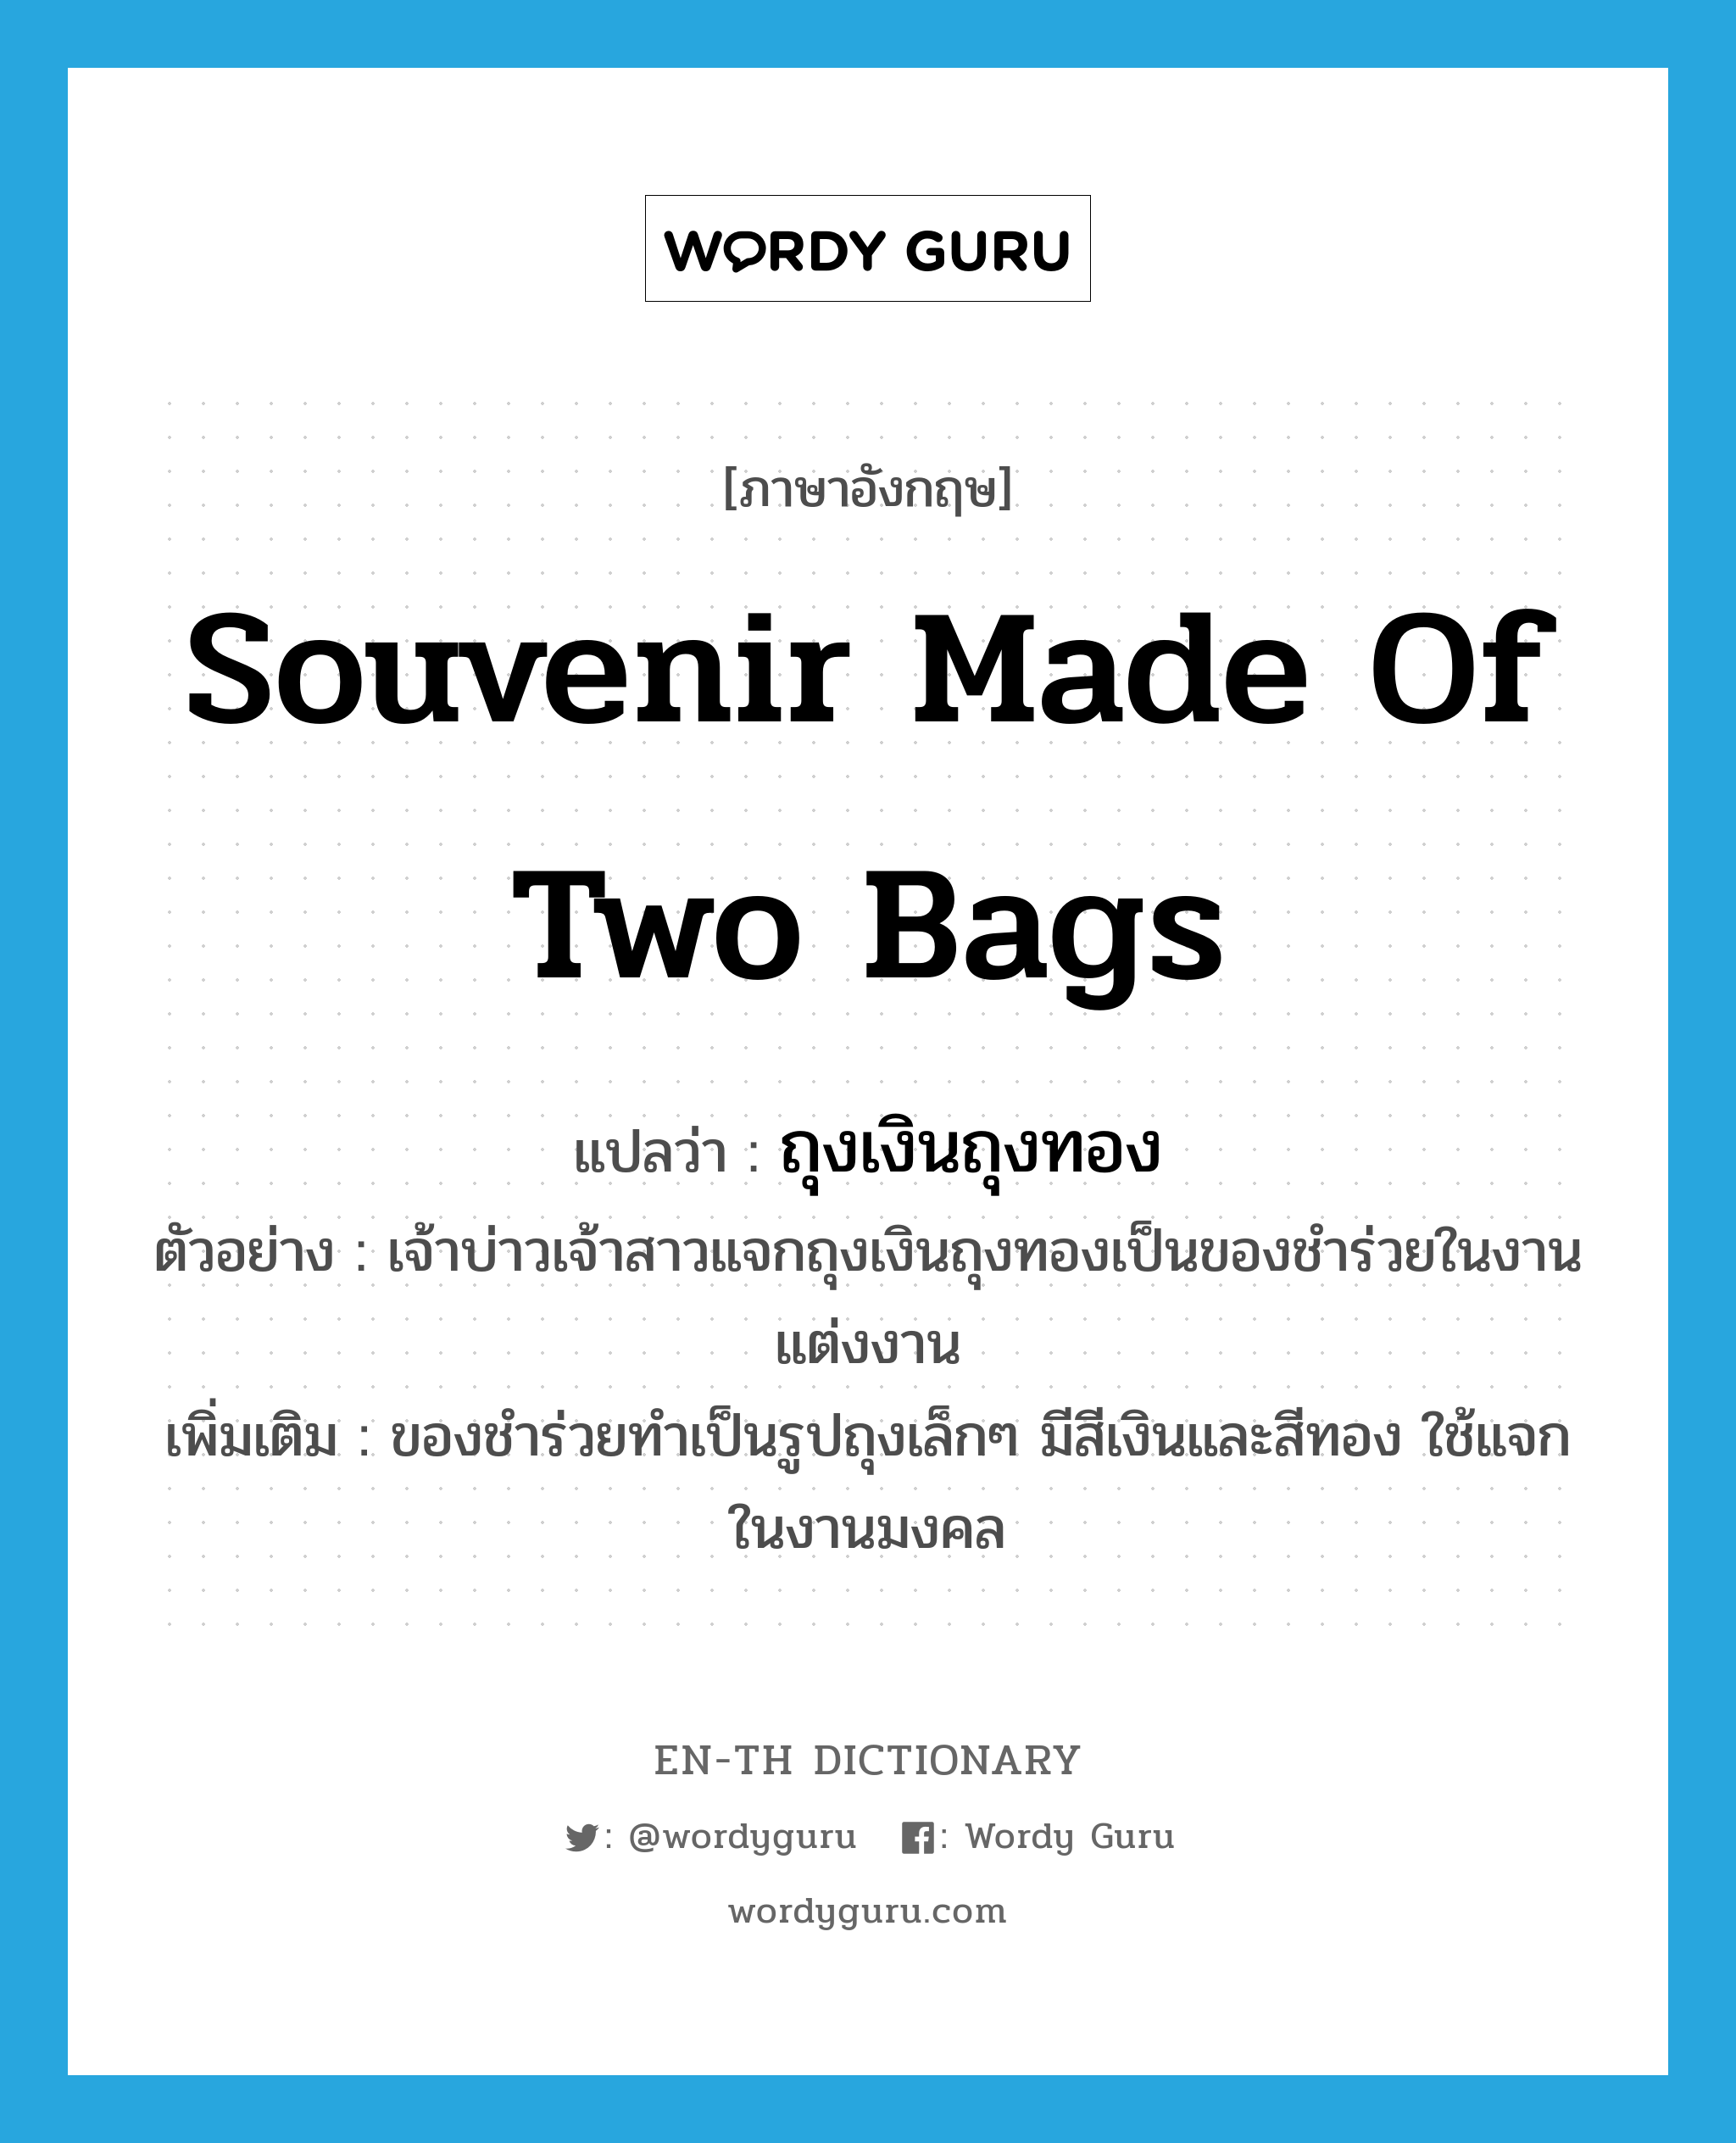 souvenir made of two bags แปลว่า?, คำศัพท์ภาษาอังกฤษ souvenir made of two bags แปลว่า ถุงเงินถุงทอง ประเภท N ตัวอย่าง เจ้าบ่าวเจ้าสาวแจกถุงเงินถุงทองเป็นของชำร่วยในงานแต่งงาน เพิ่มเติม ของชำร่วยทำเป็นรูปถุงเล็กๆ มีสีเงินและสีทอง ใช้แจกในงานมงคล หมวด N